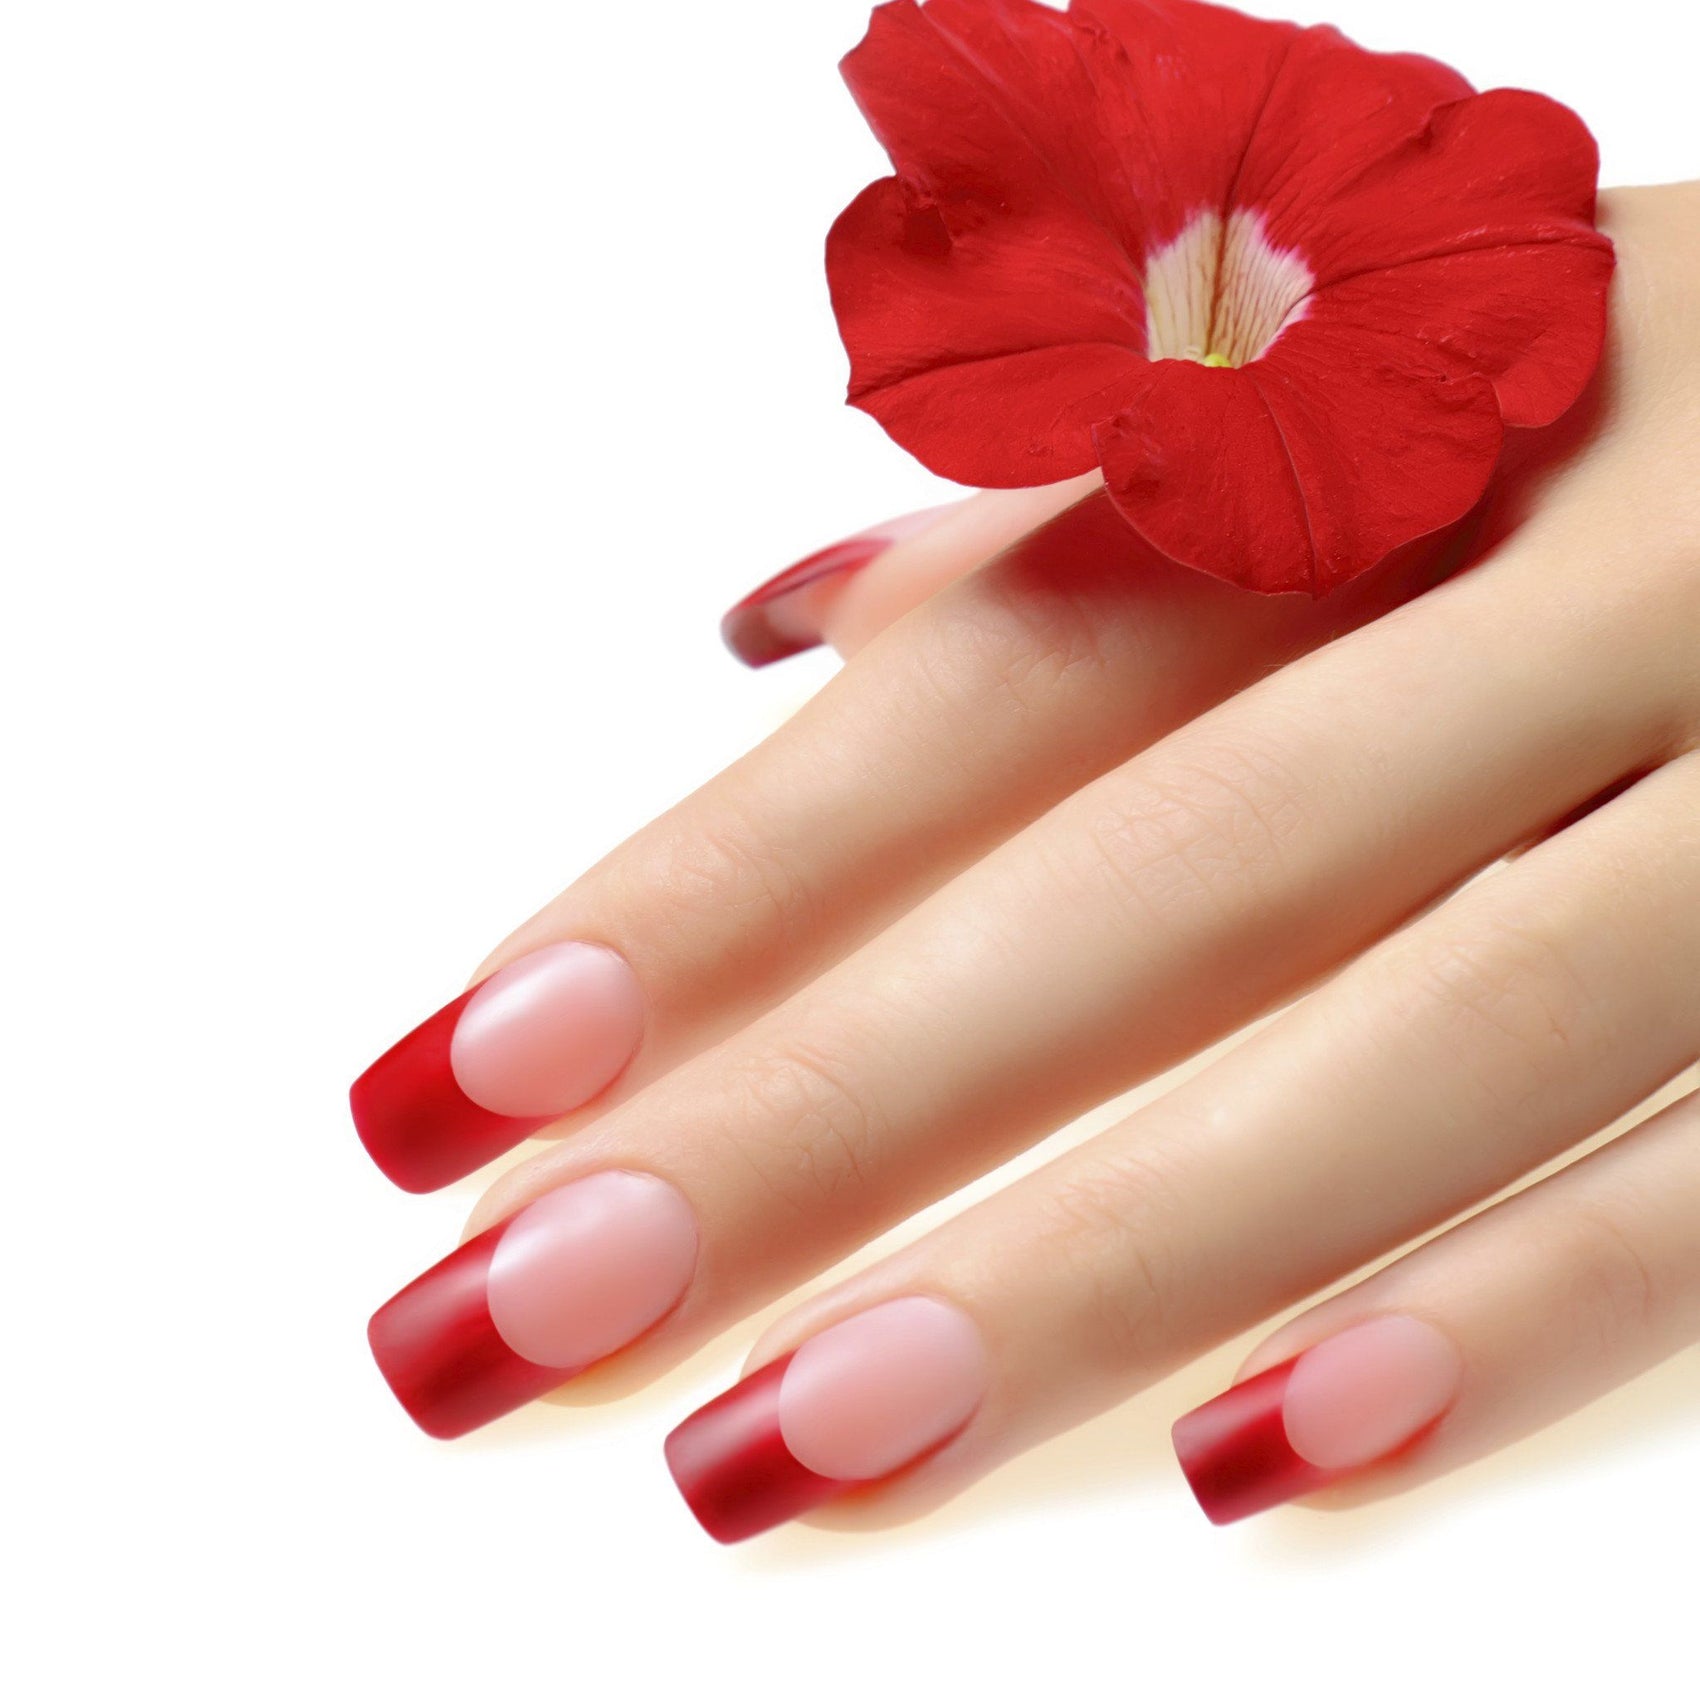 Tips and Tricks for Gel Polish Lifting  Gel nail tips, Gel nails diy, Gel  nail designs